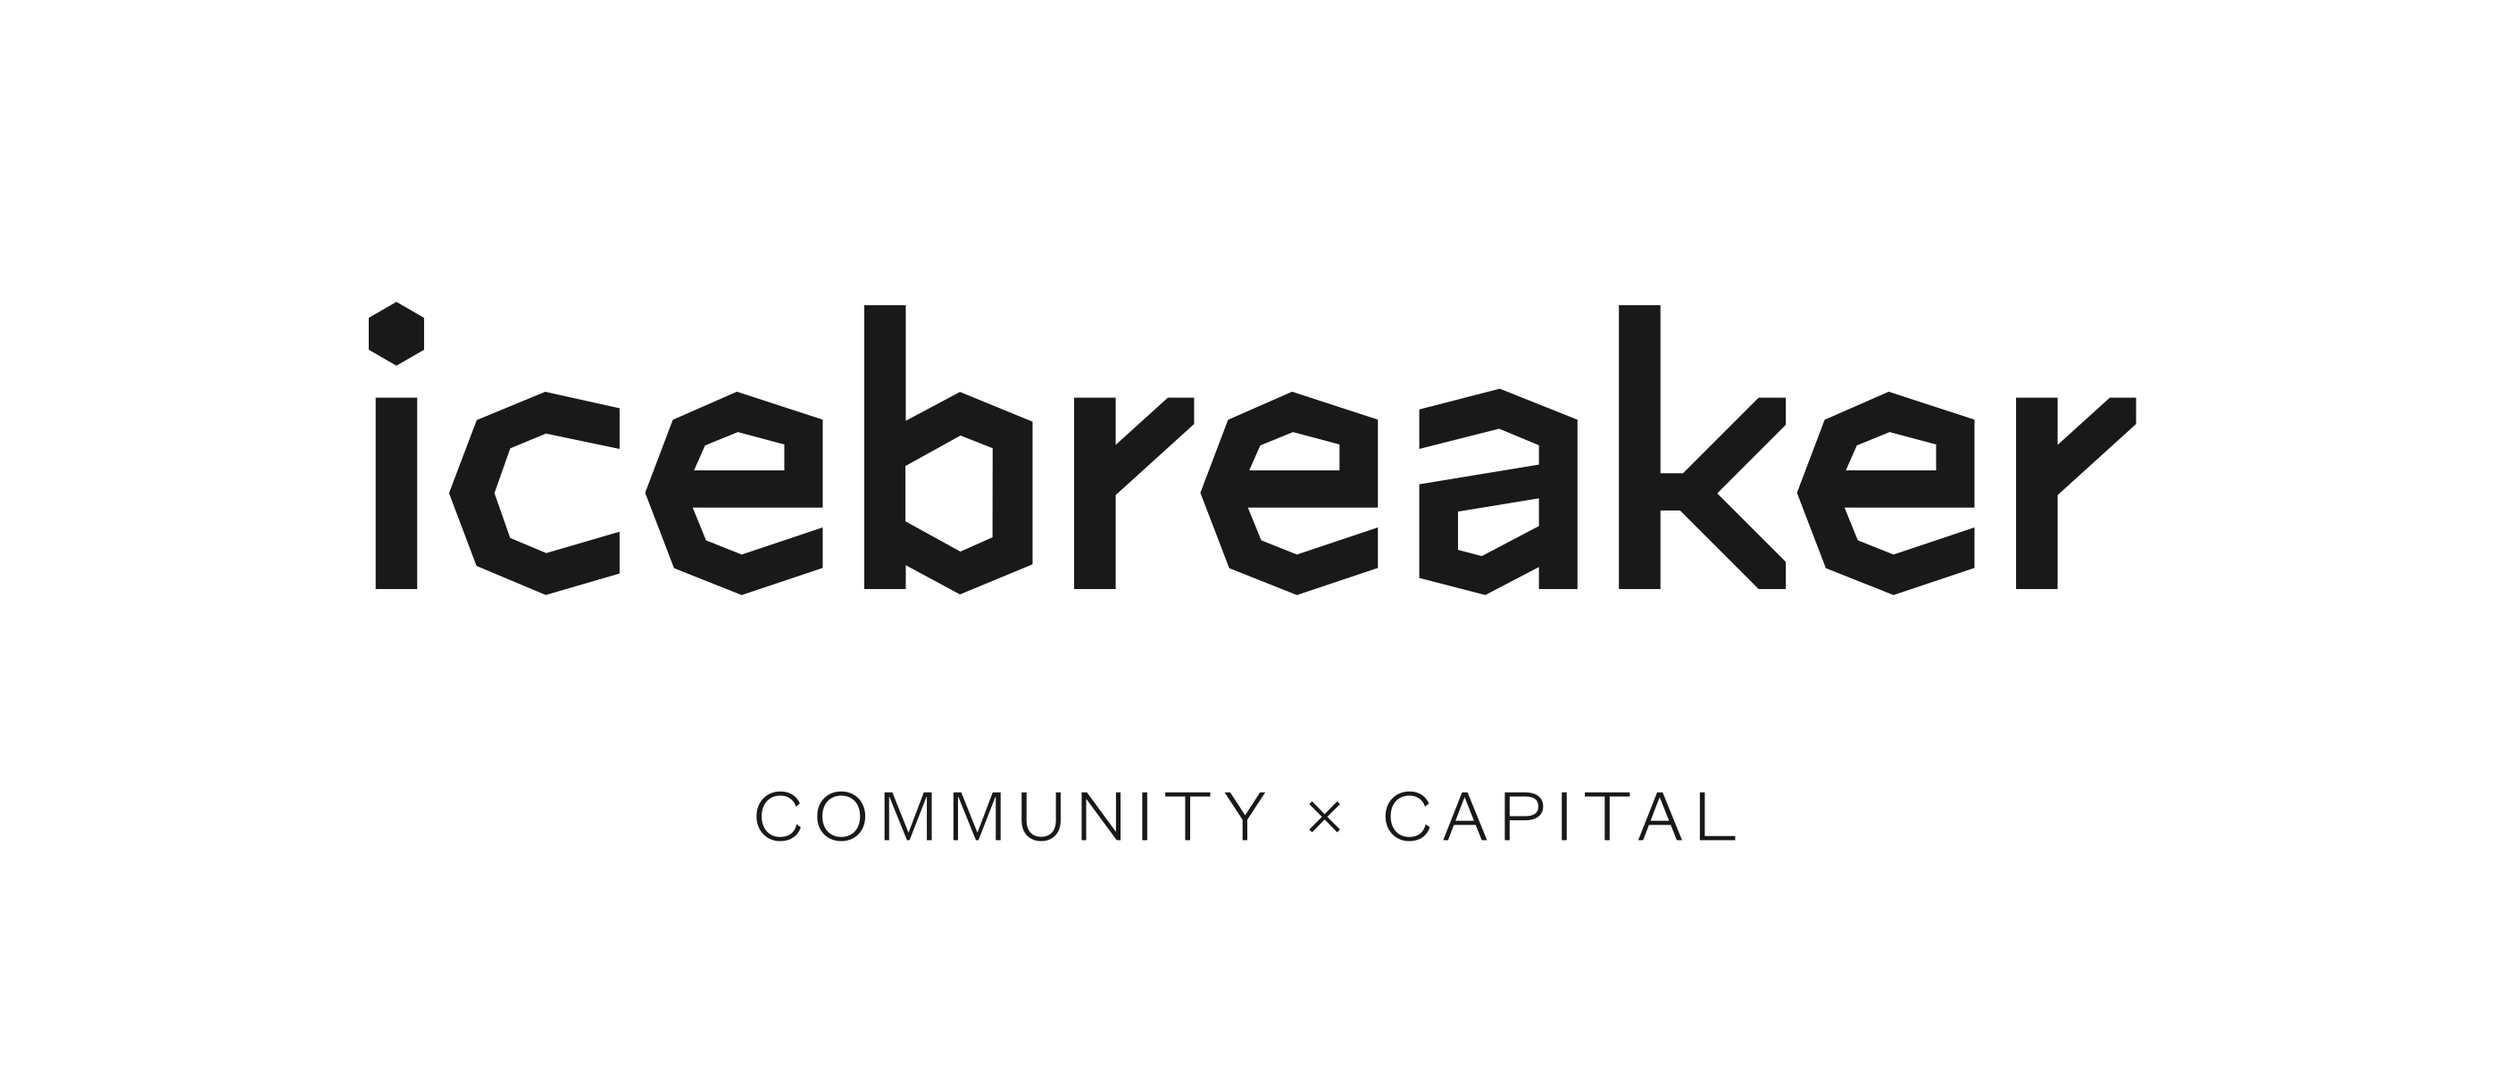 Icebreaker-logo-slogan-png white bg small.png